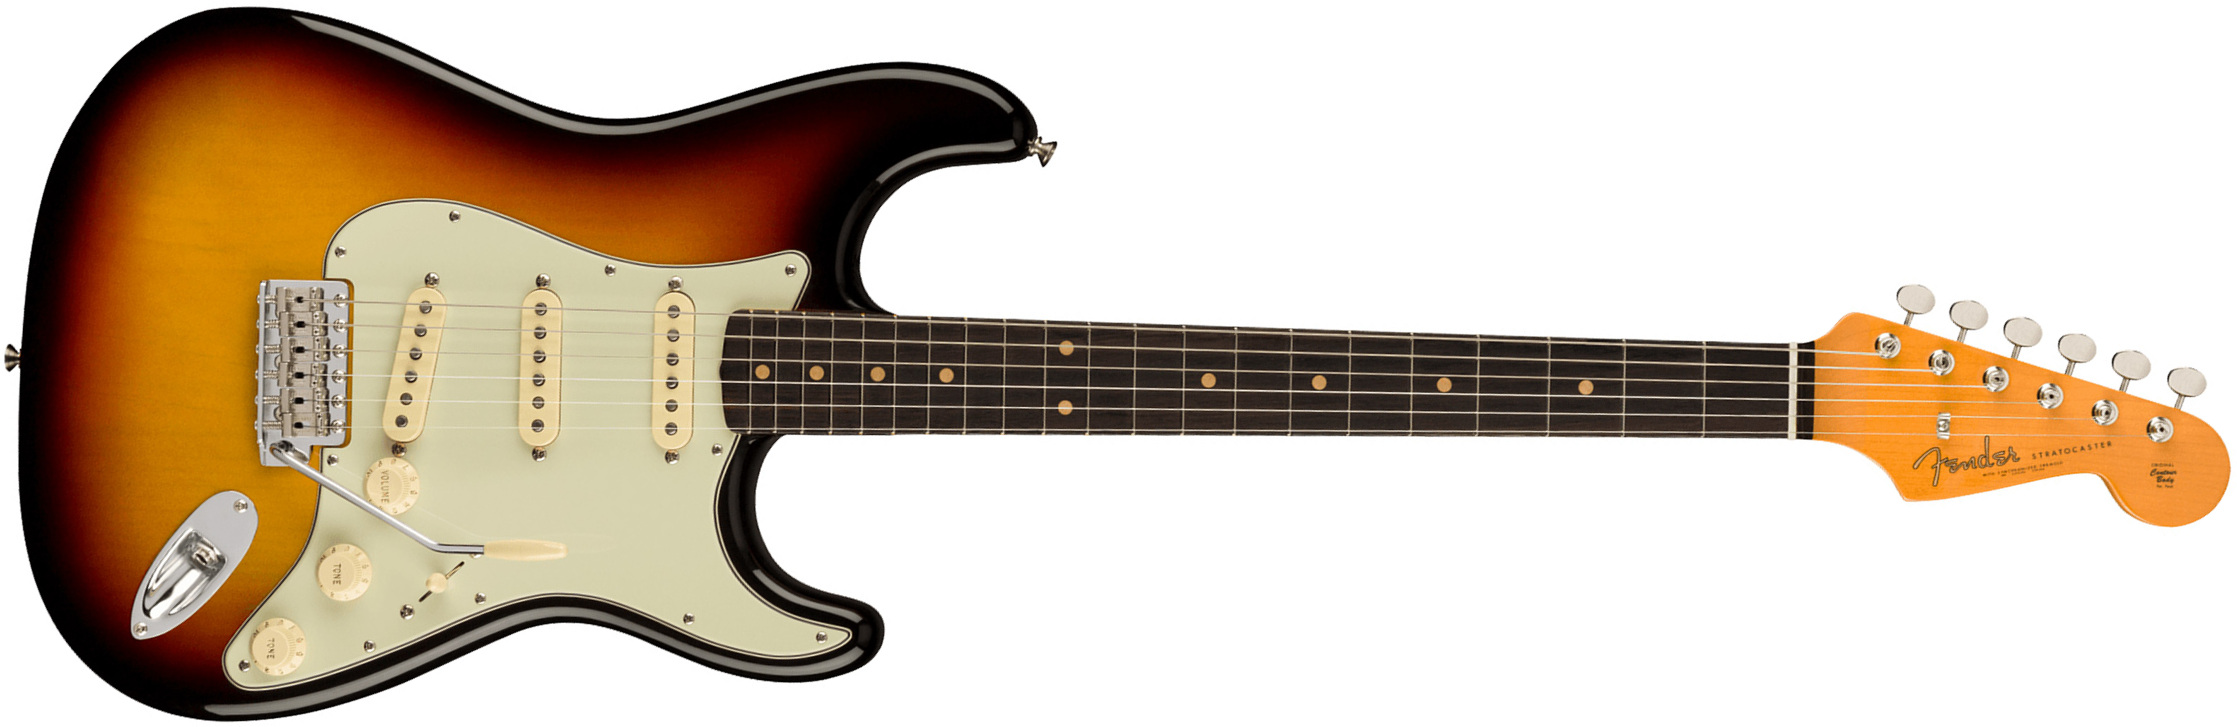 Fender Strat 1961 American Vintage Ii Usa 3s Trem Rw - 3-color Sunburst - Guitare Électrique Forme Str - Main picture